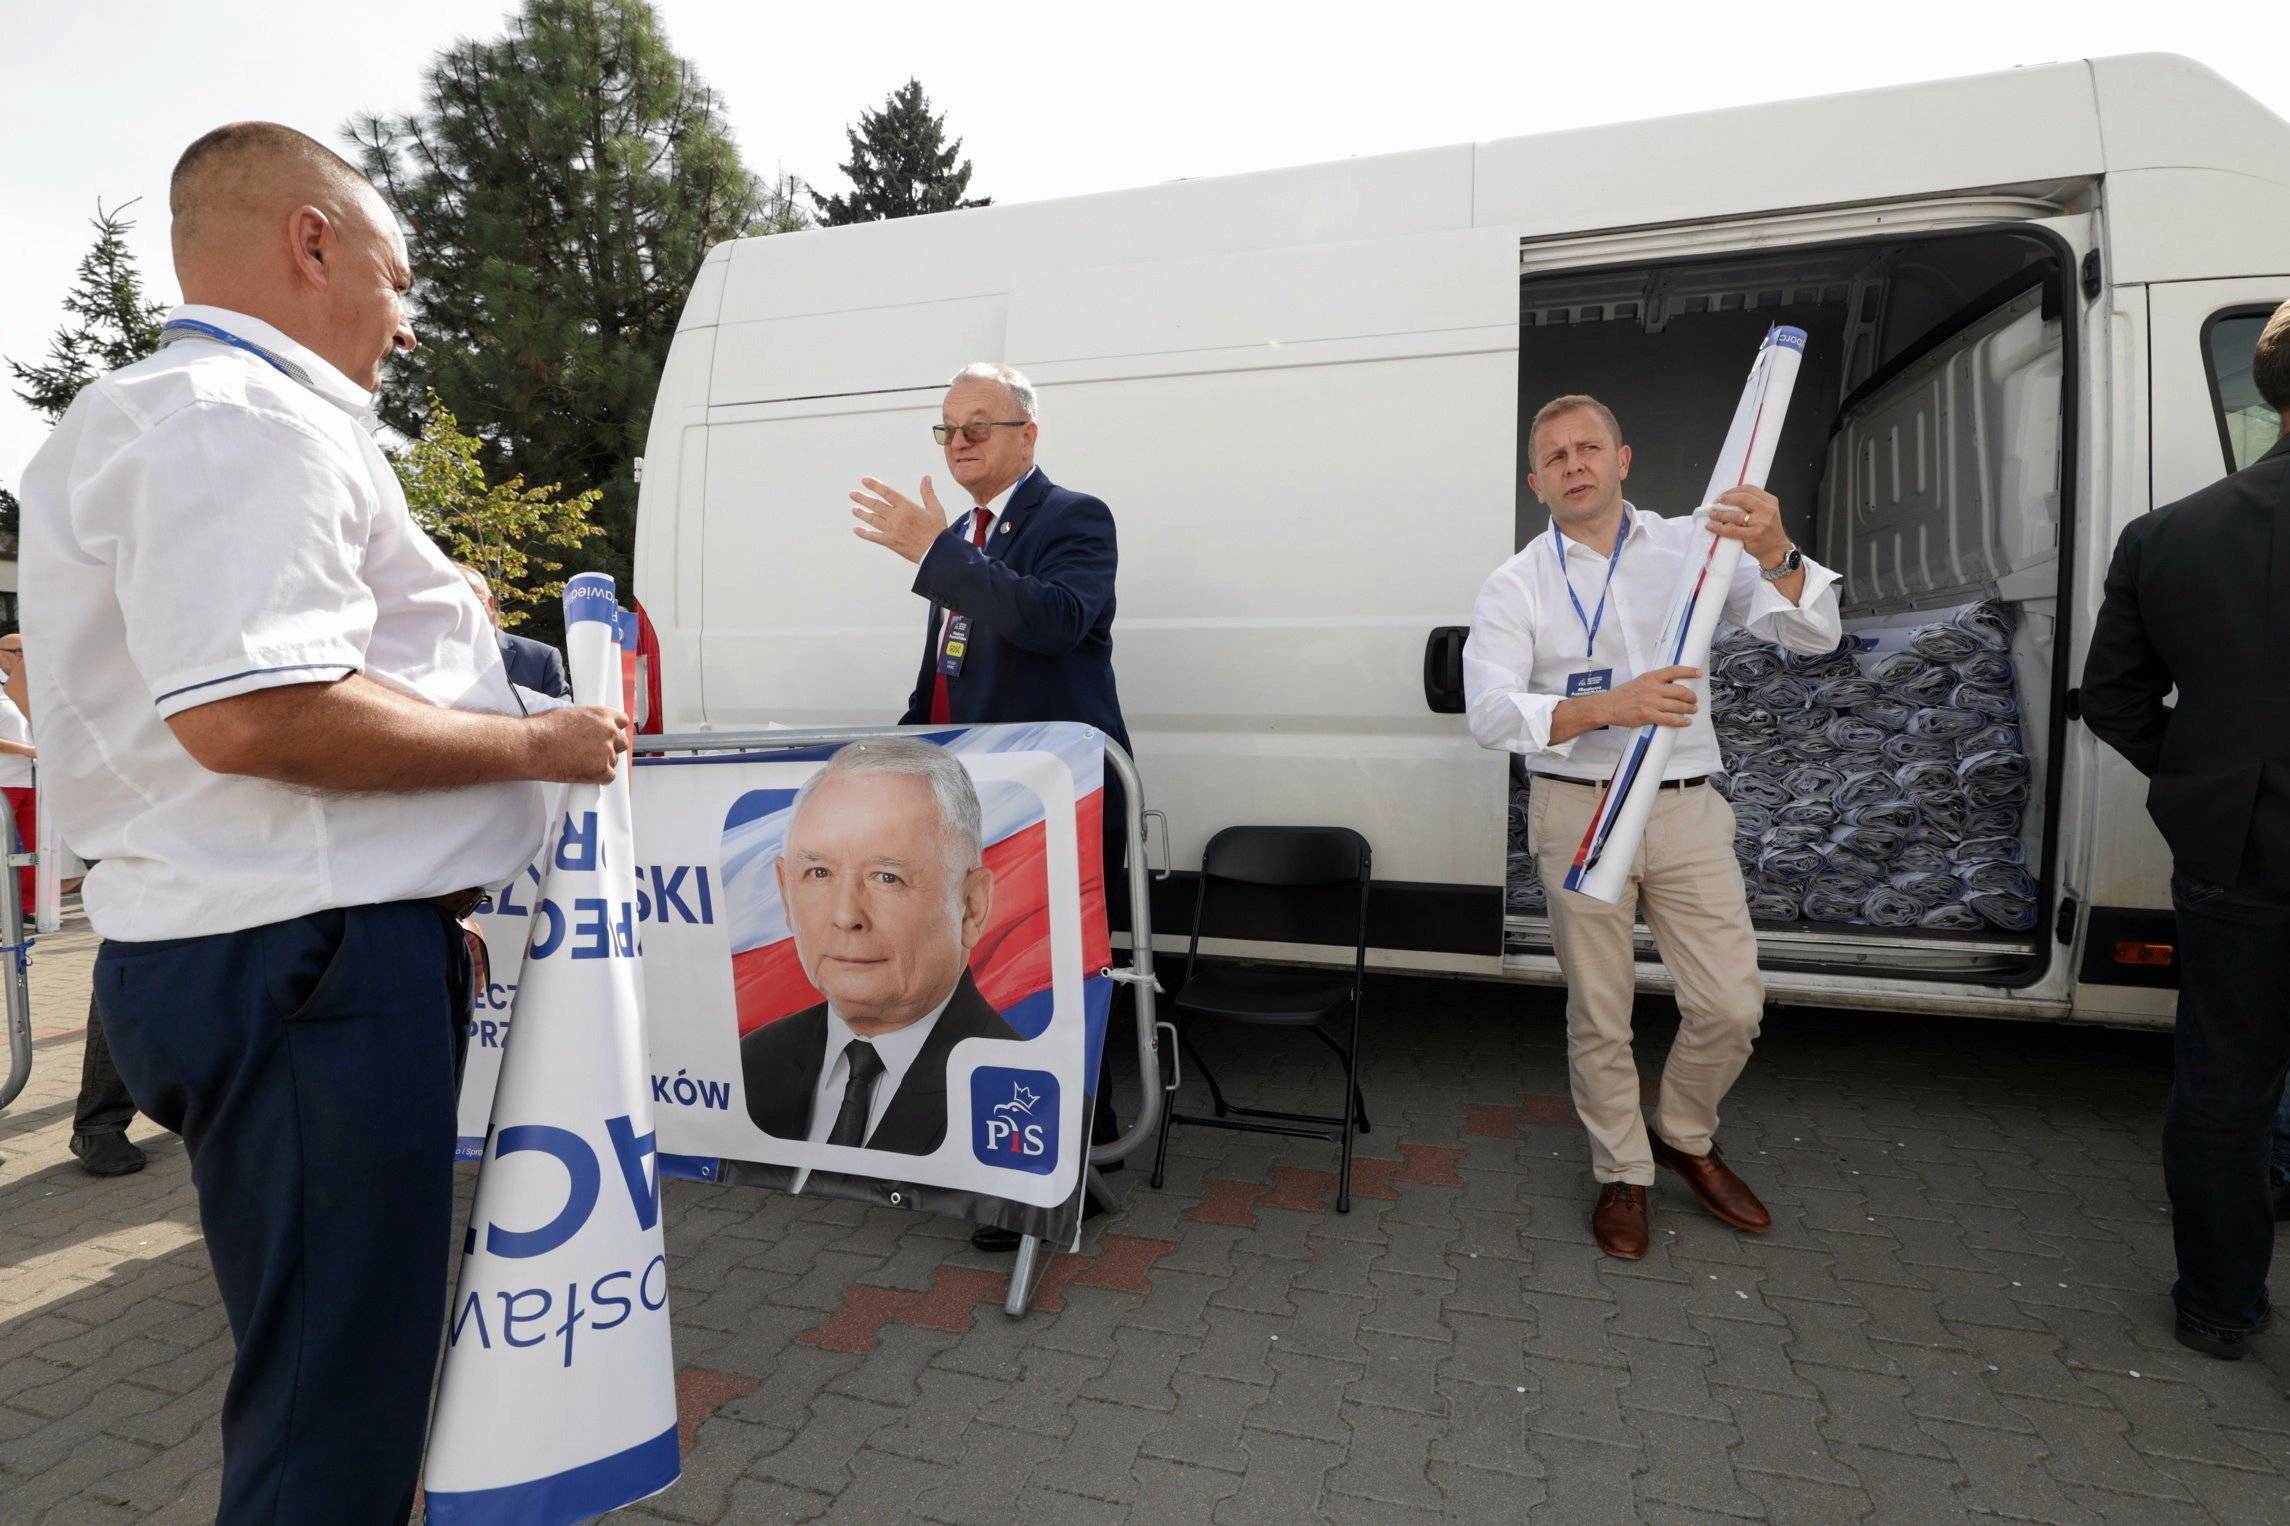 trzech mężczyzn wypakowuje z białego minvana baner z Jarosławem Kaczyńskim i inne materiały na kampanię wyborczą